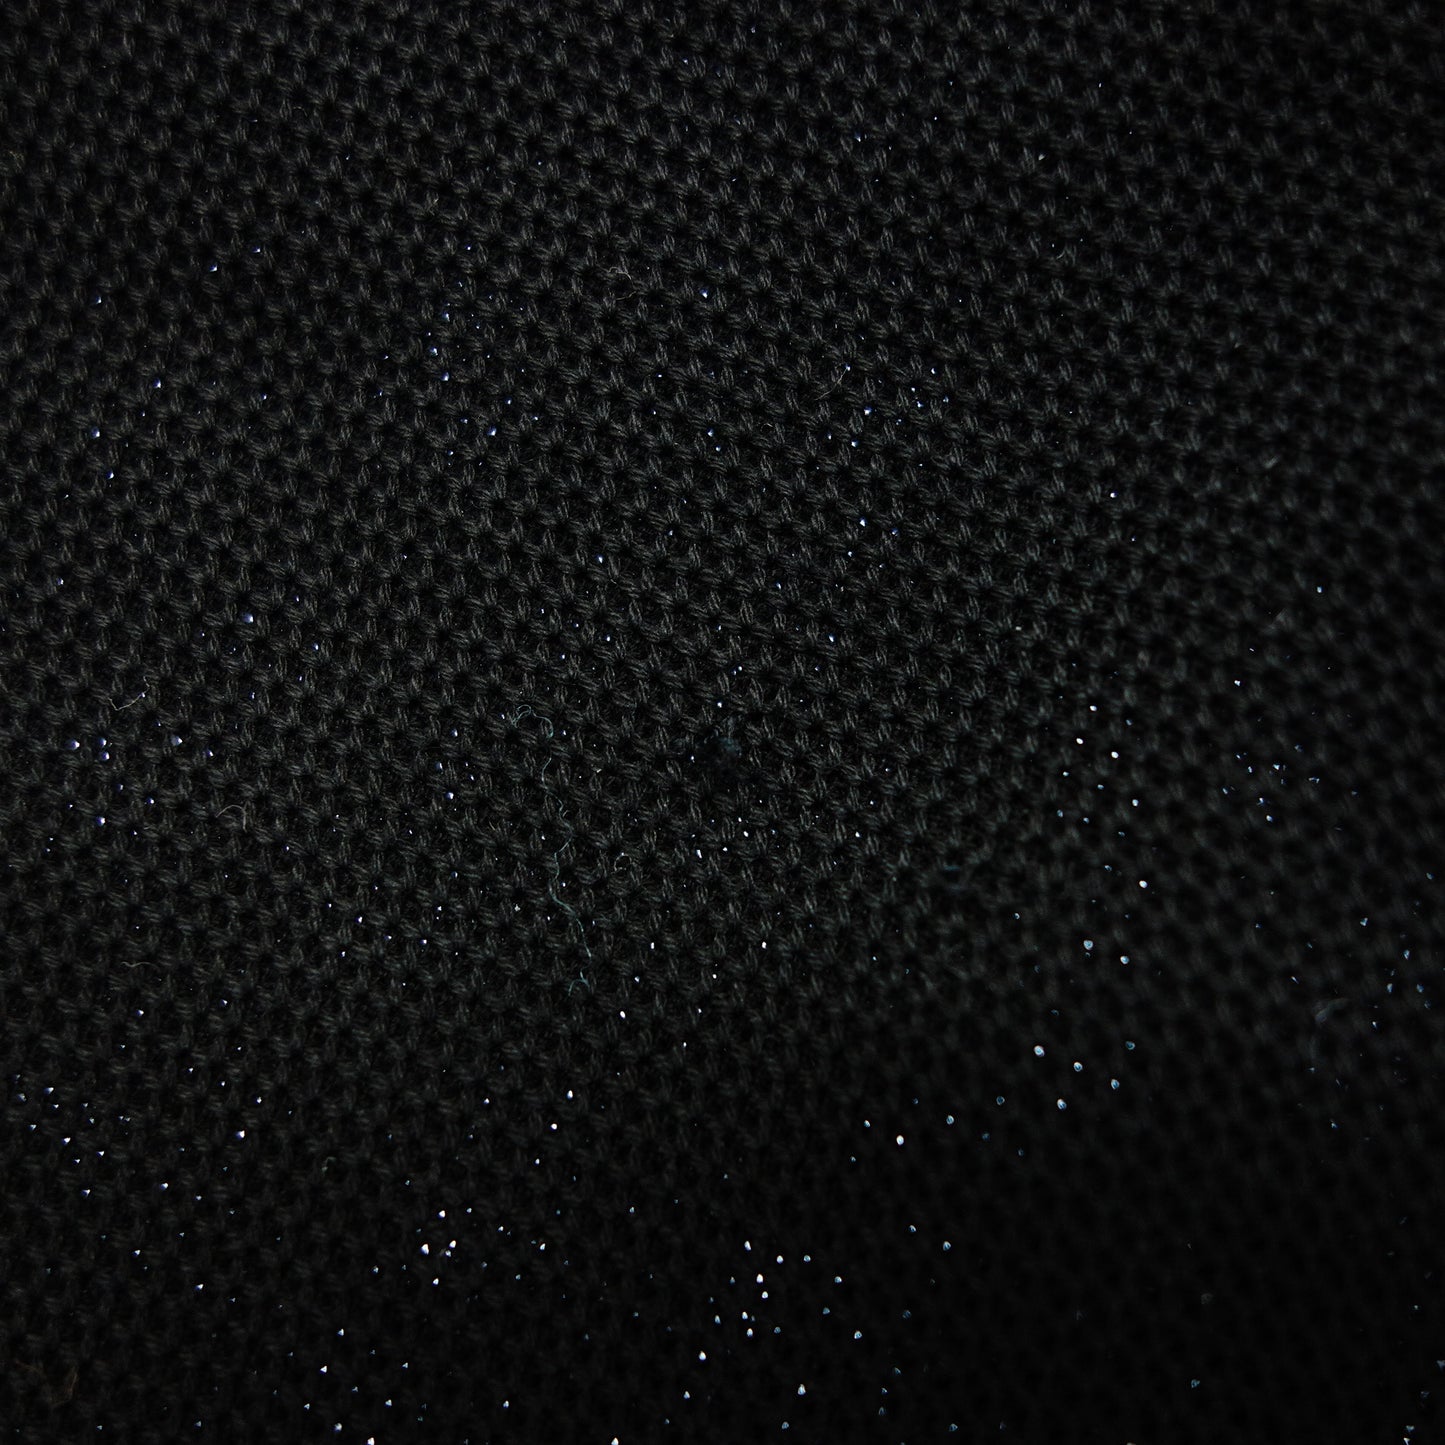 バーバリー ポロシャツ ティッシ期 シルバー金具 メンズ S 黒 BURBERRY【AFB19】【中古】